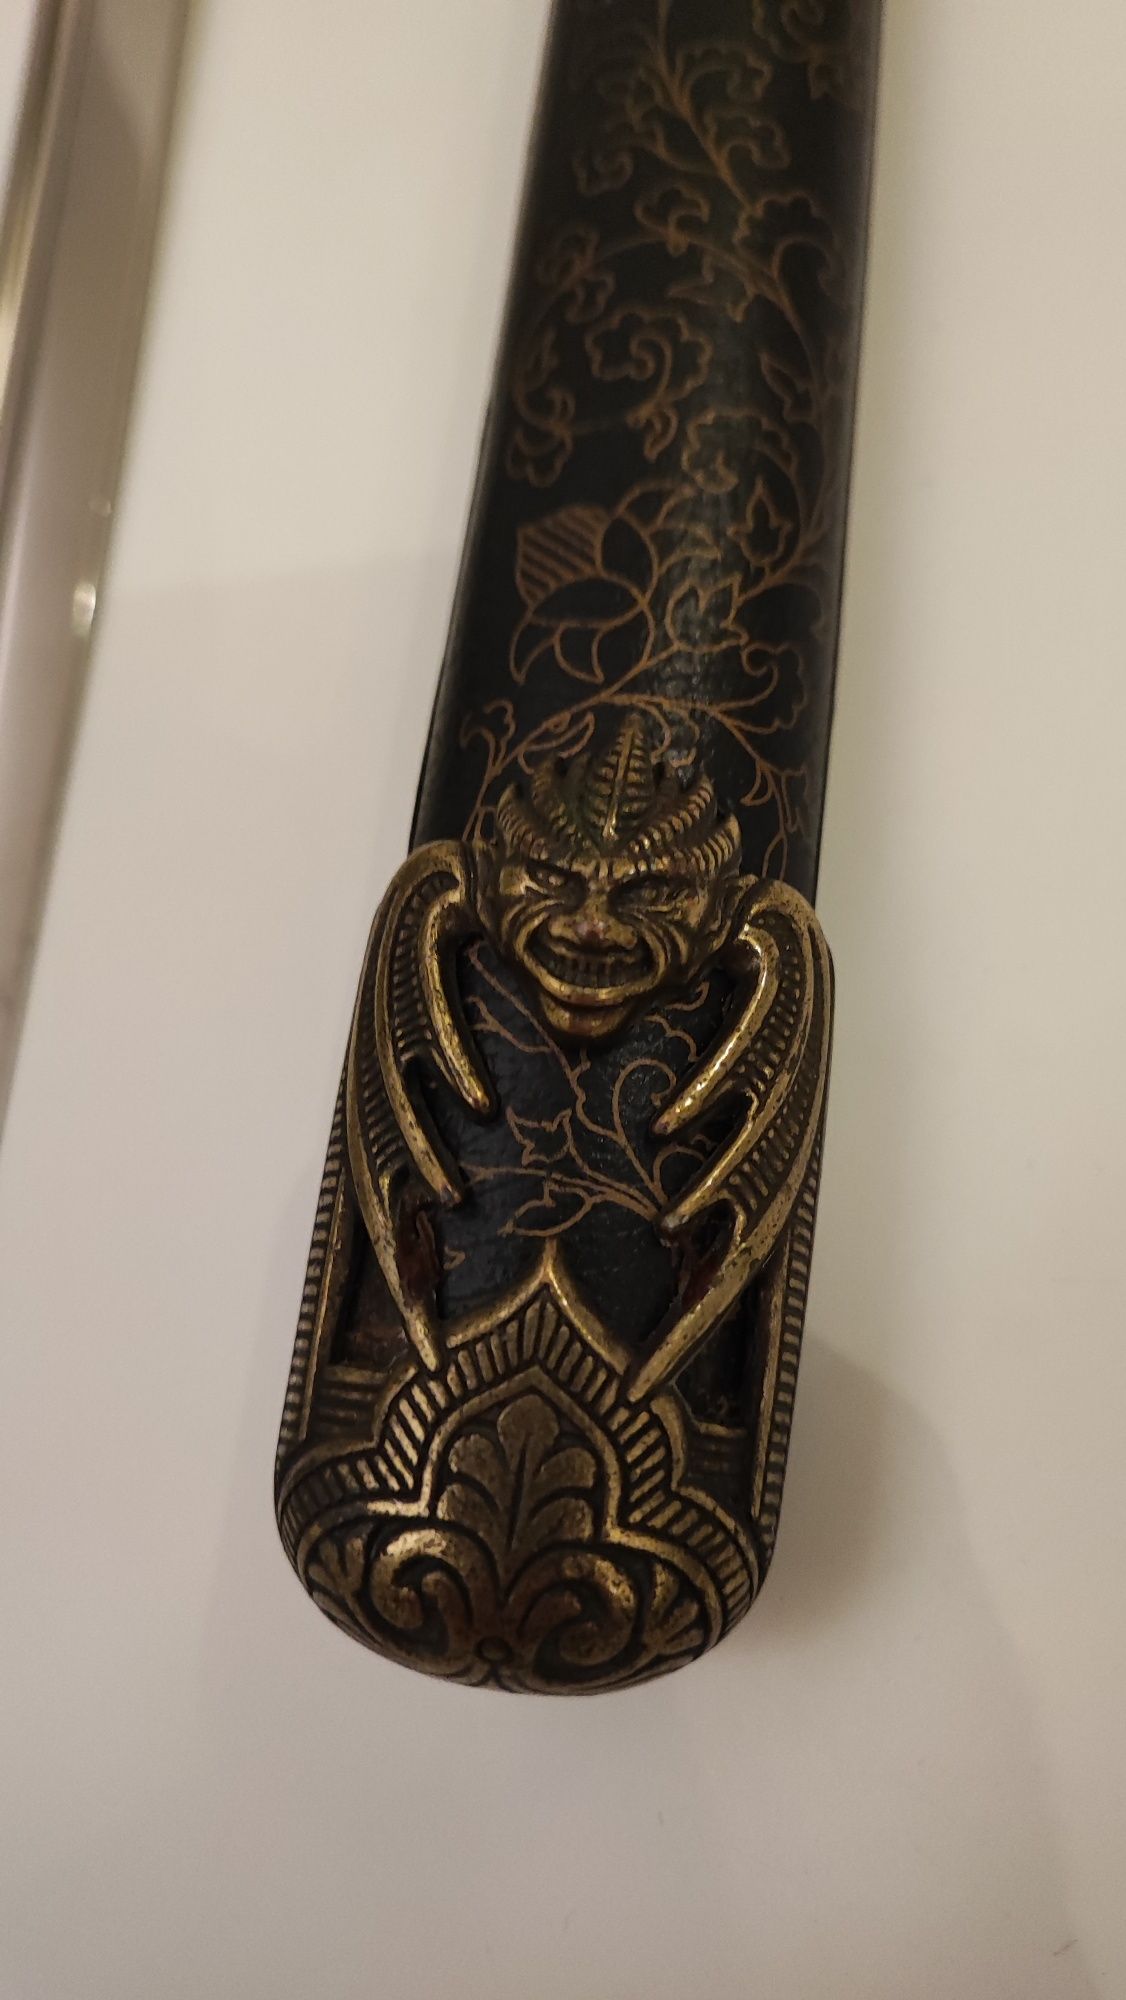 Katana unikalna miecz  japoński replika